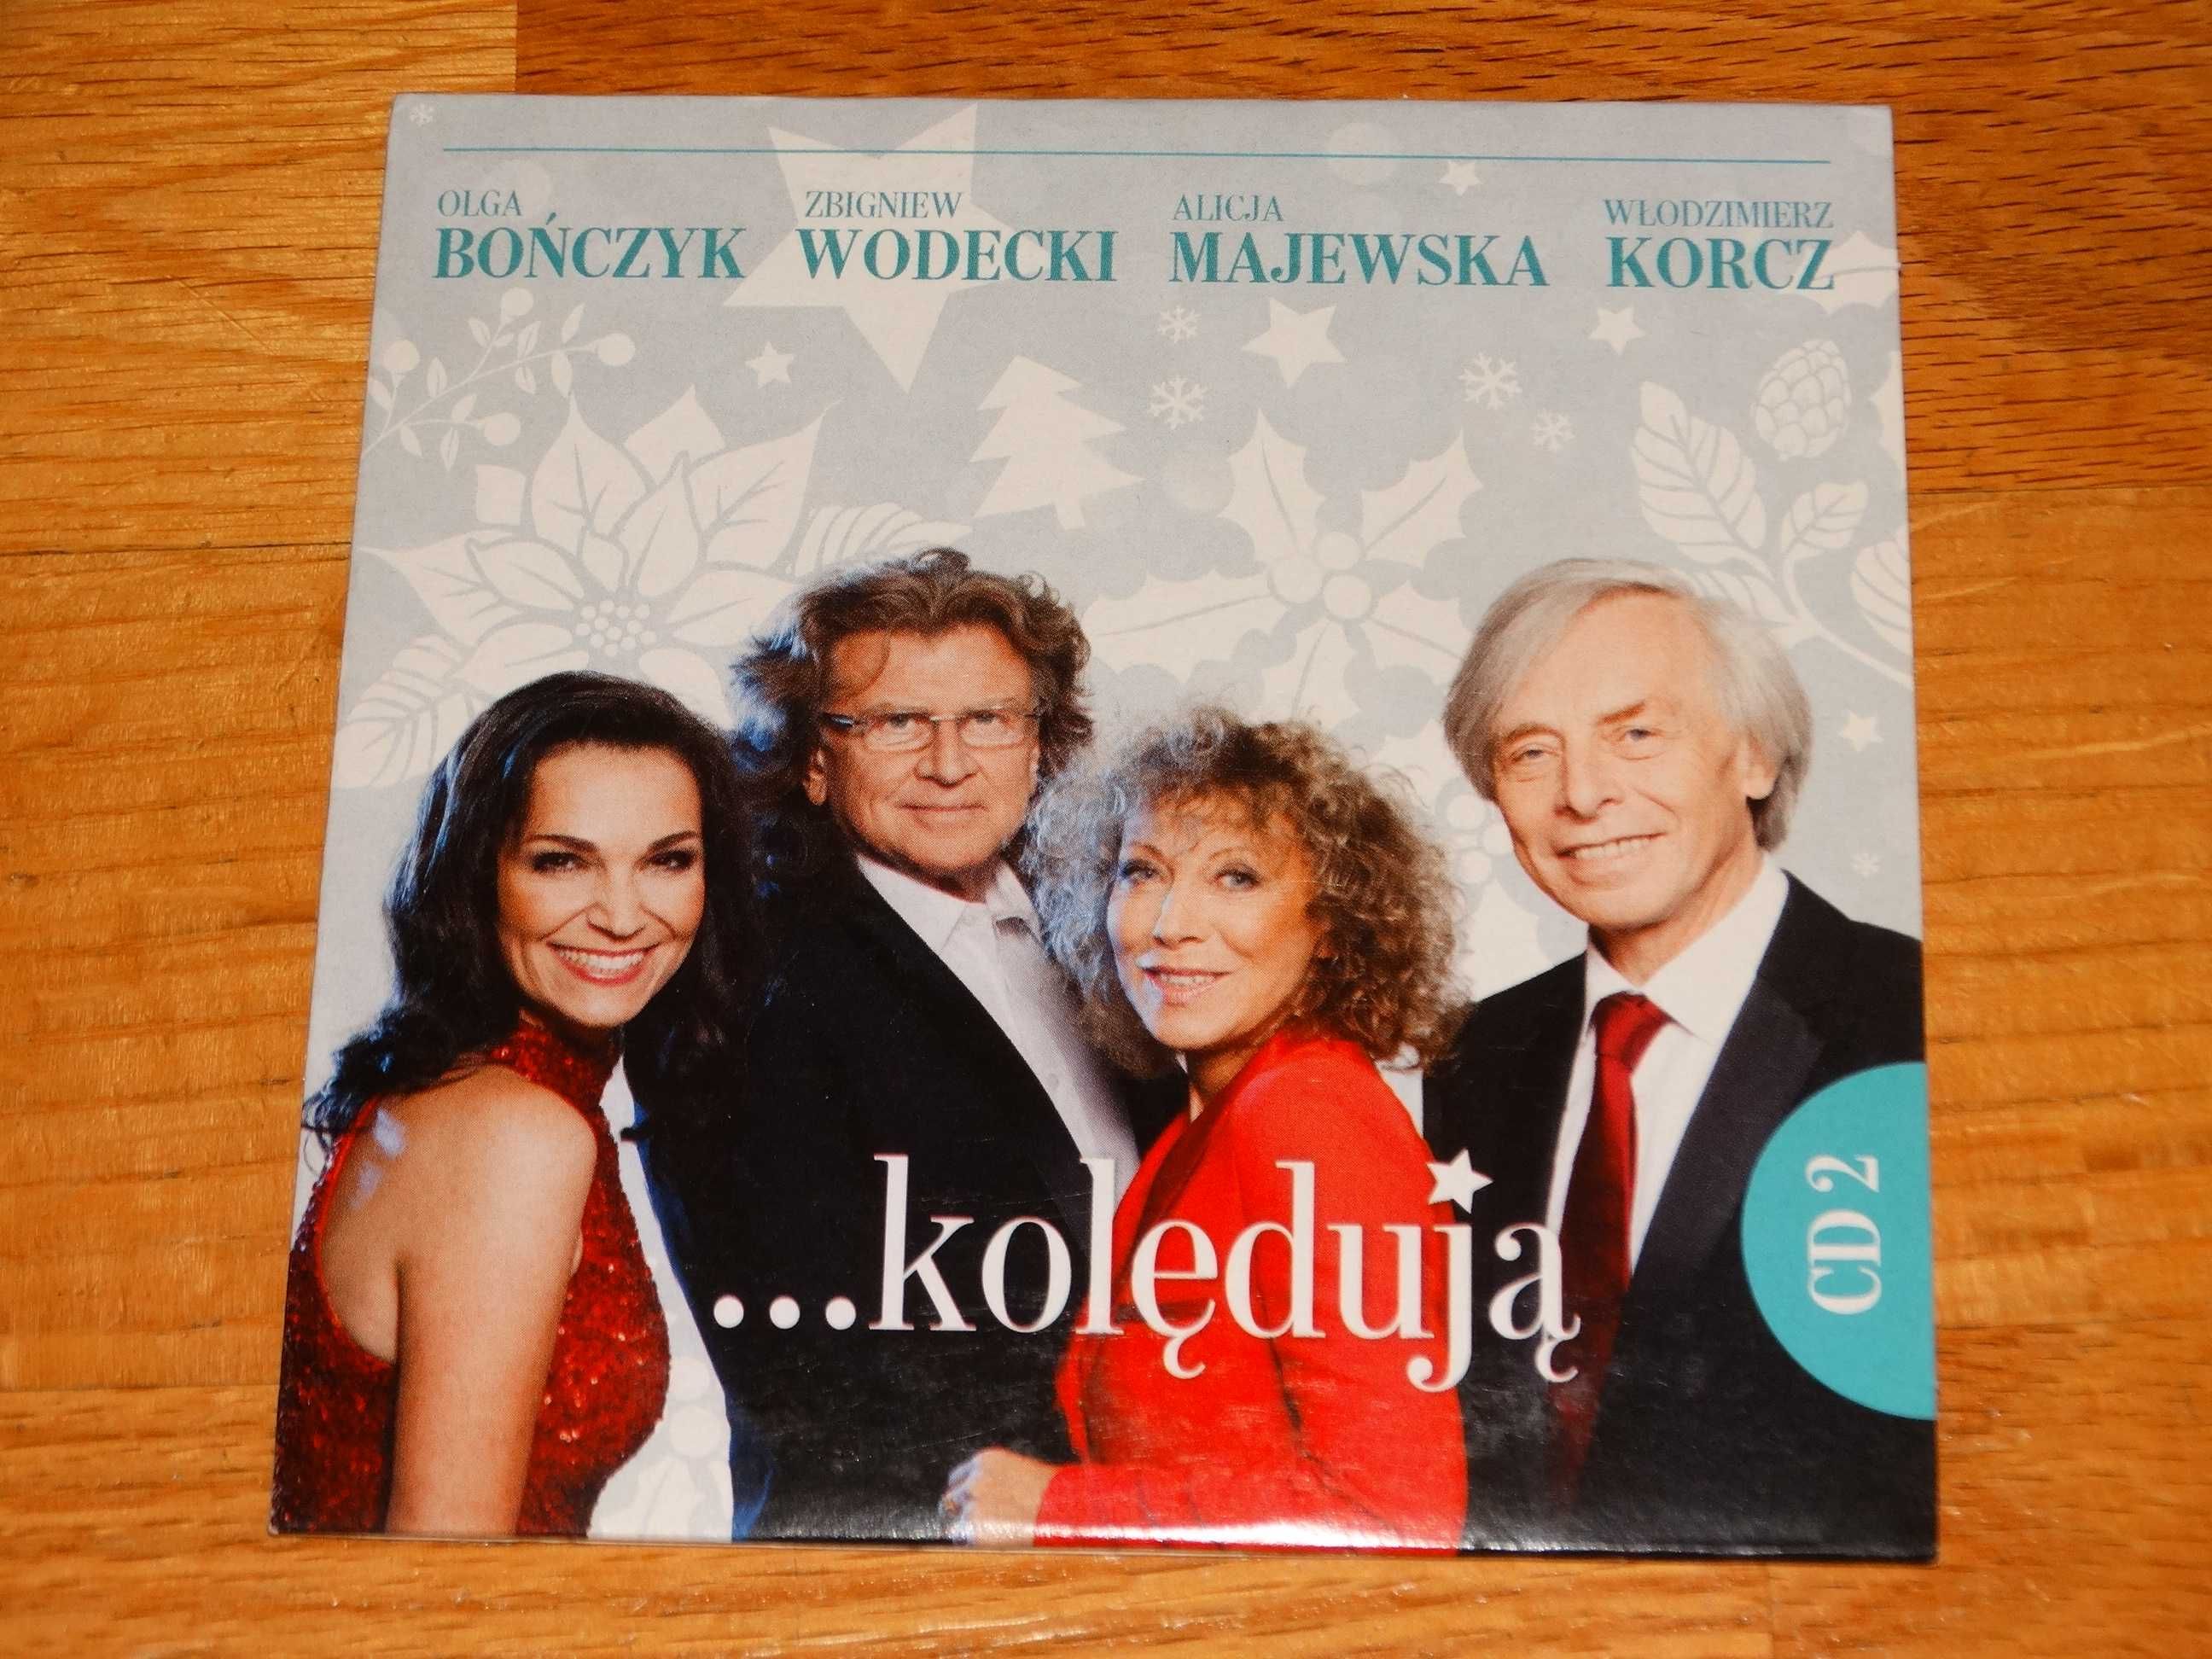 Bończyk, Wodecki, Majewska, Korcz... Kolędują CD 2 Polskie kolędy Nowe